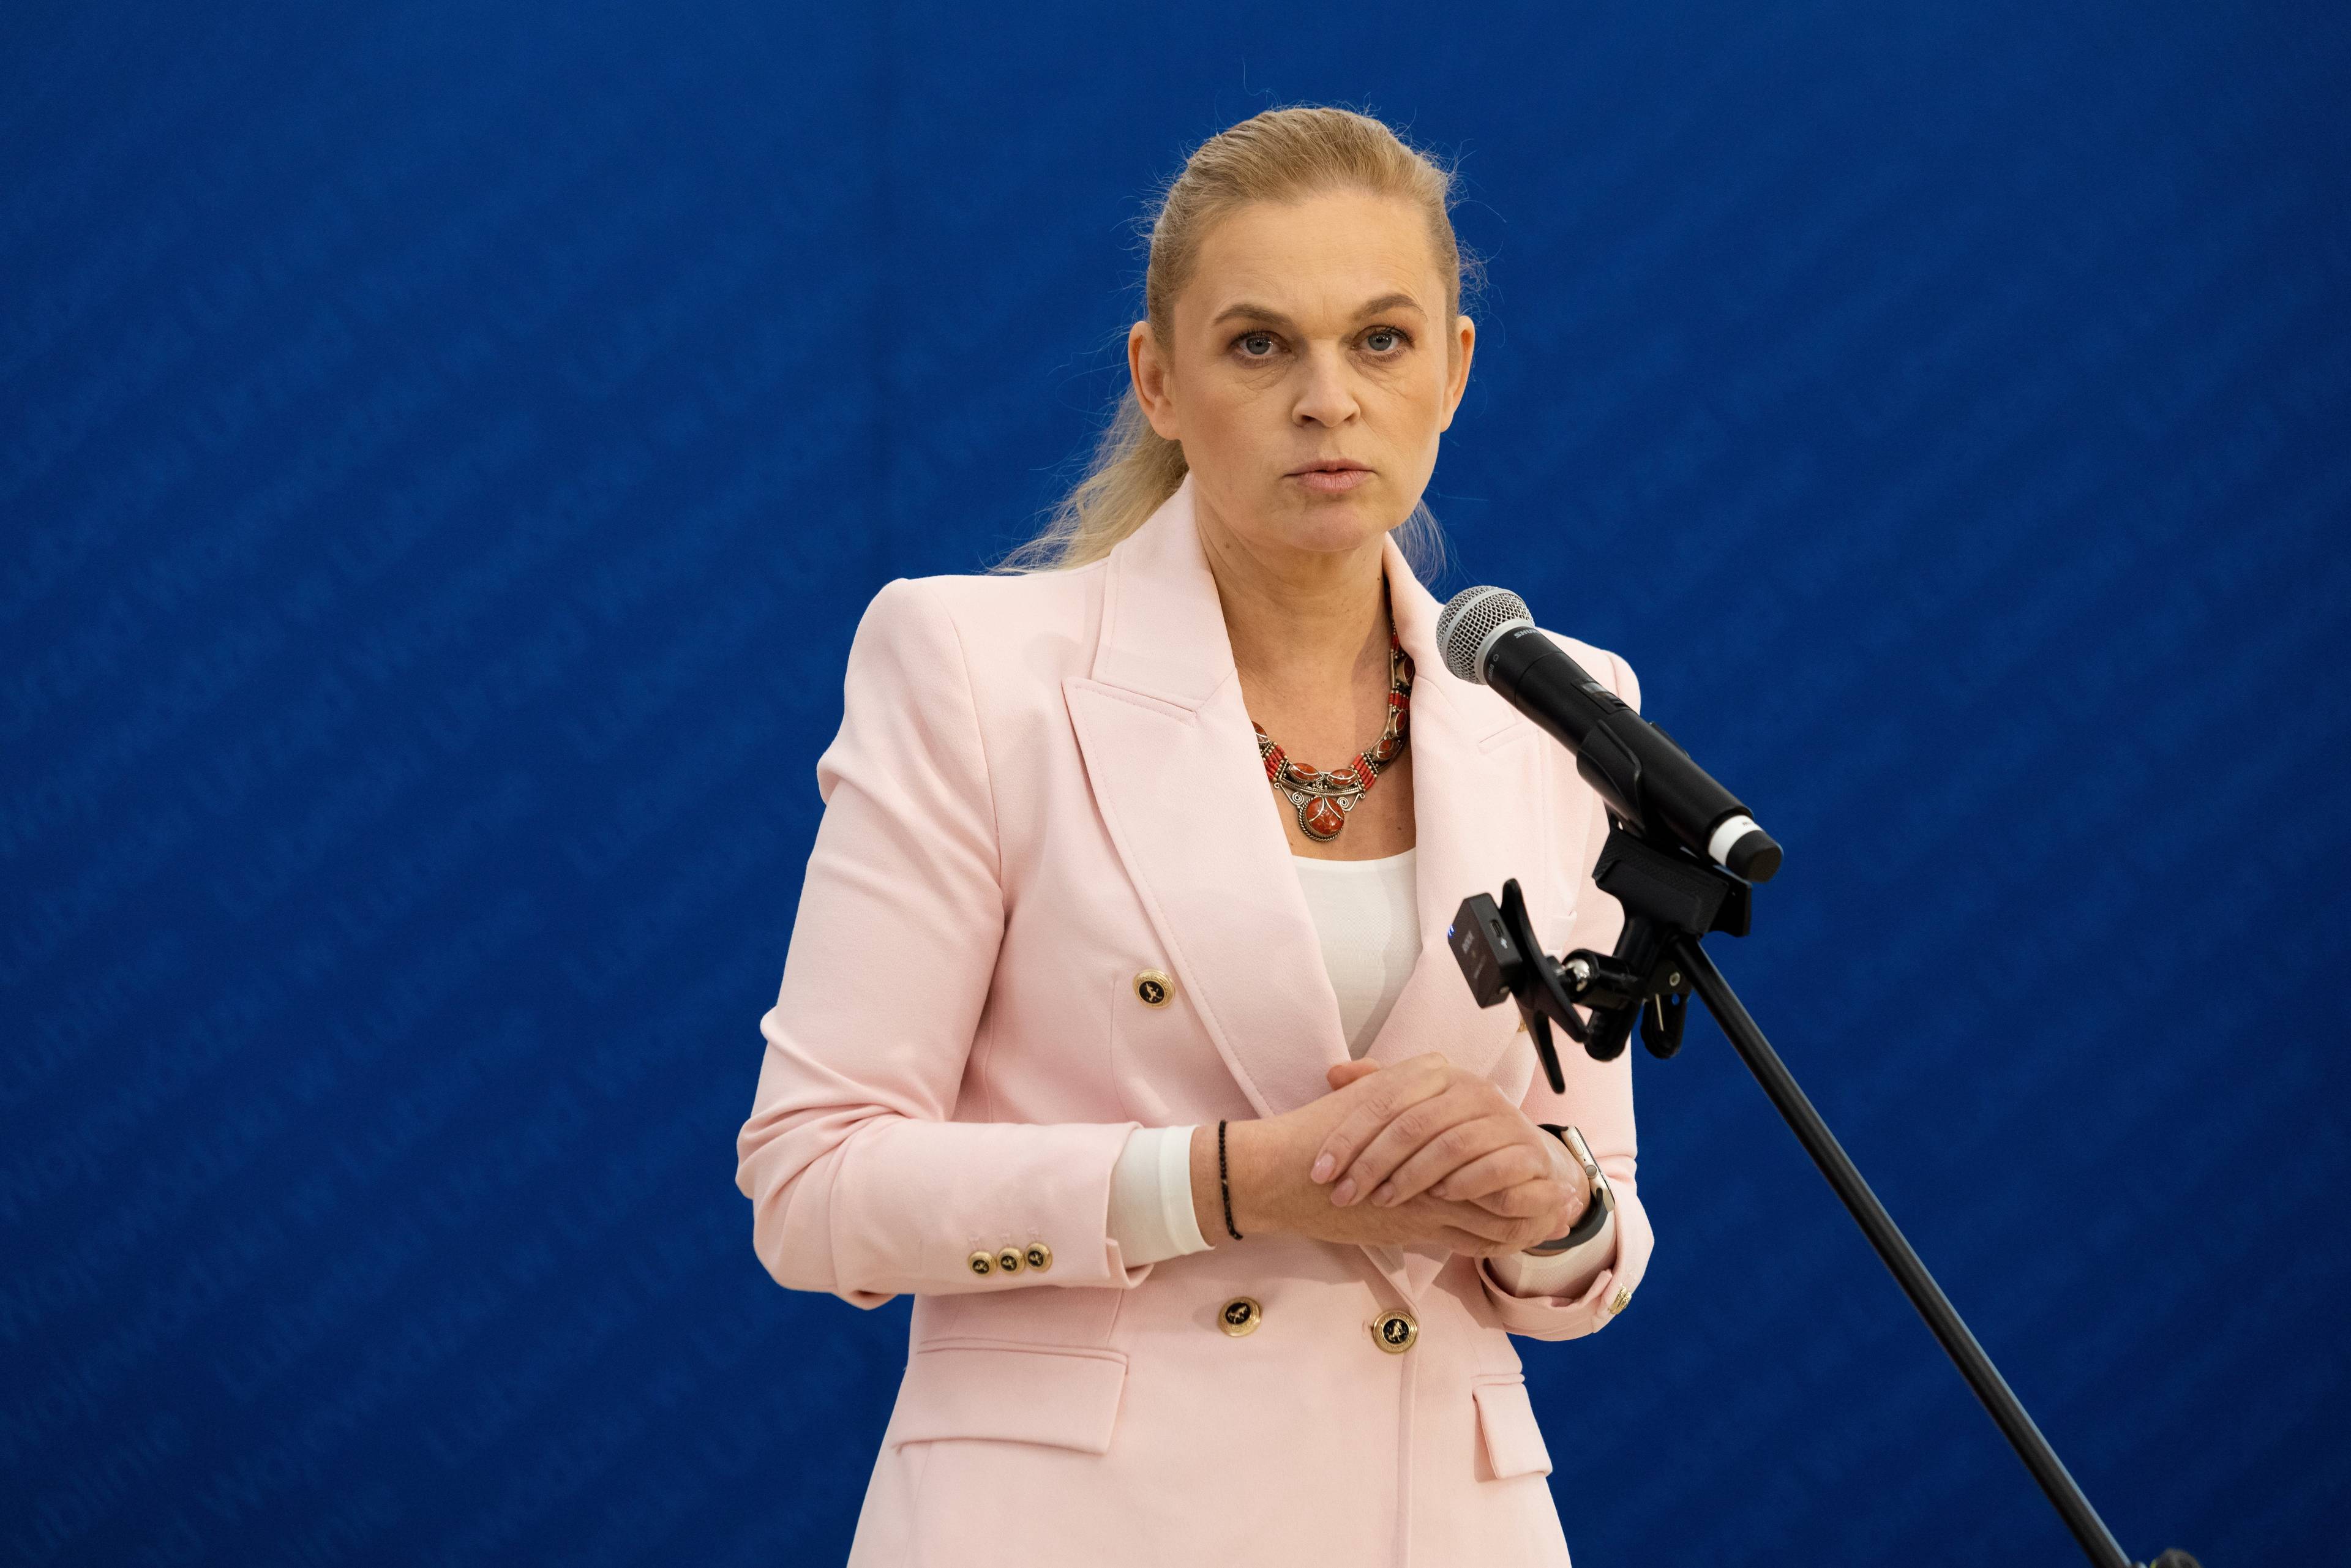 Ministra edukacji Barbara Nowacka